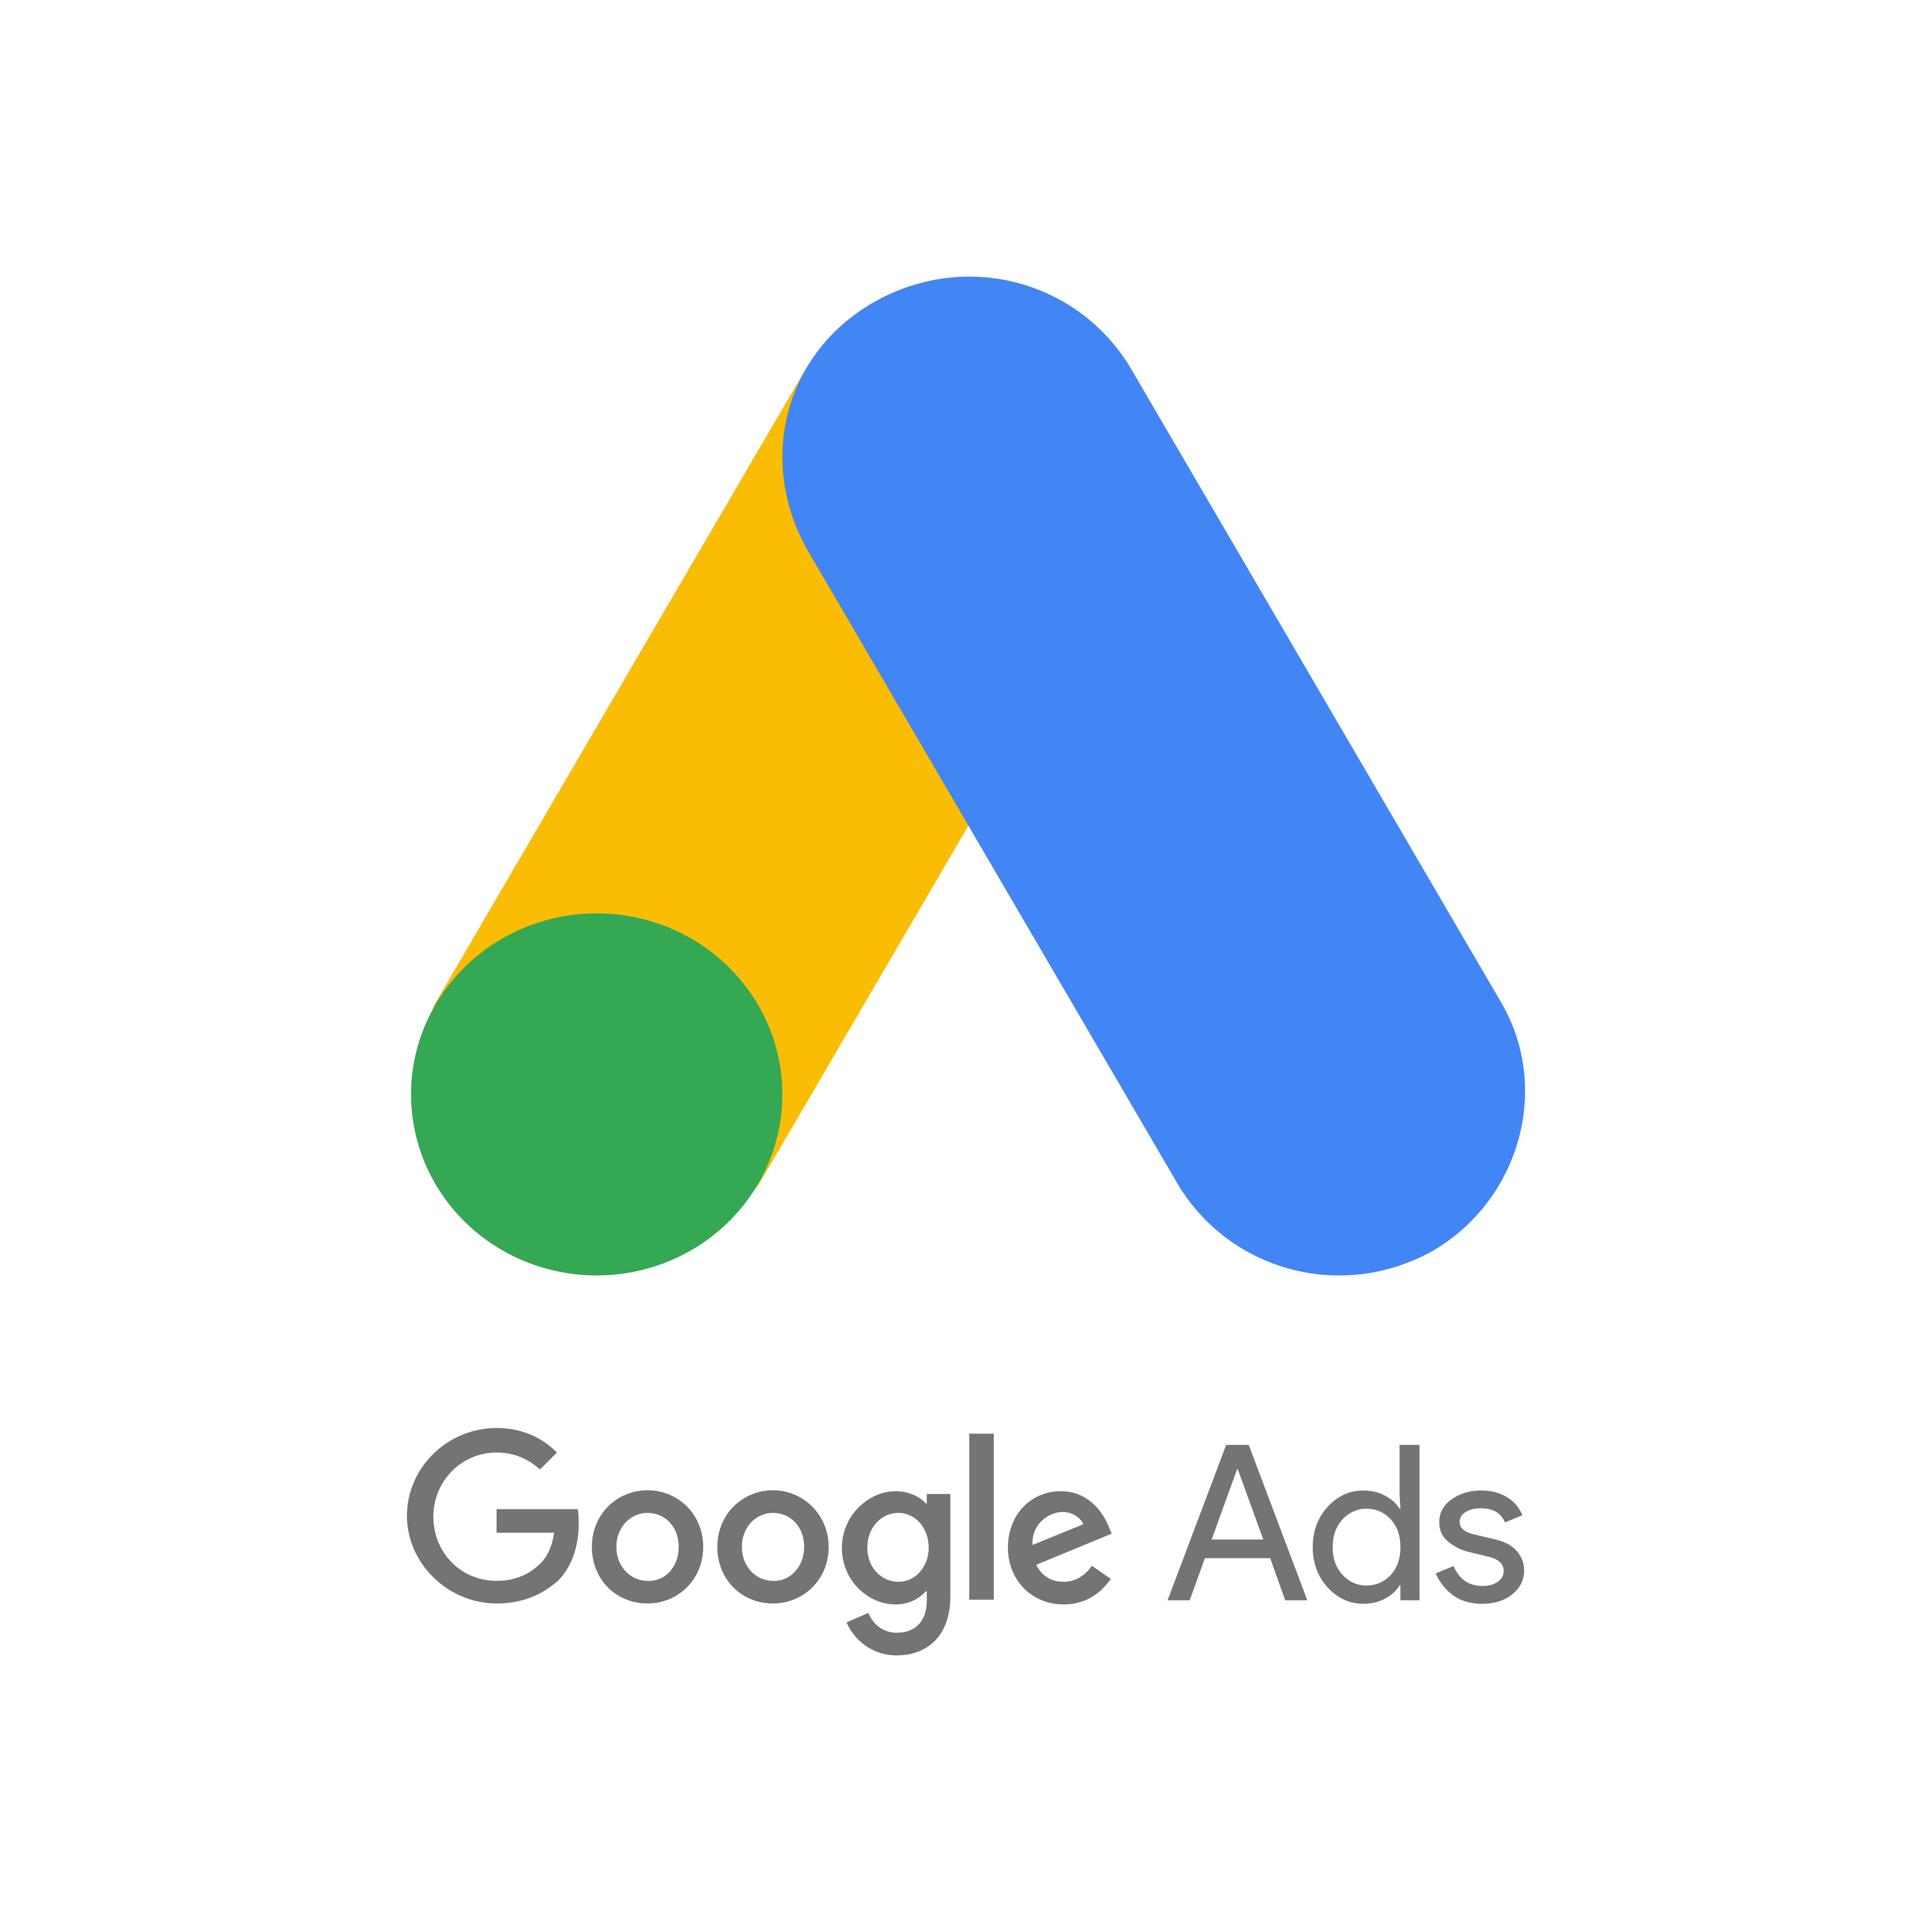 Google Ads Logo PNG File